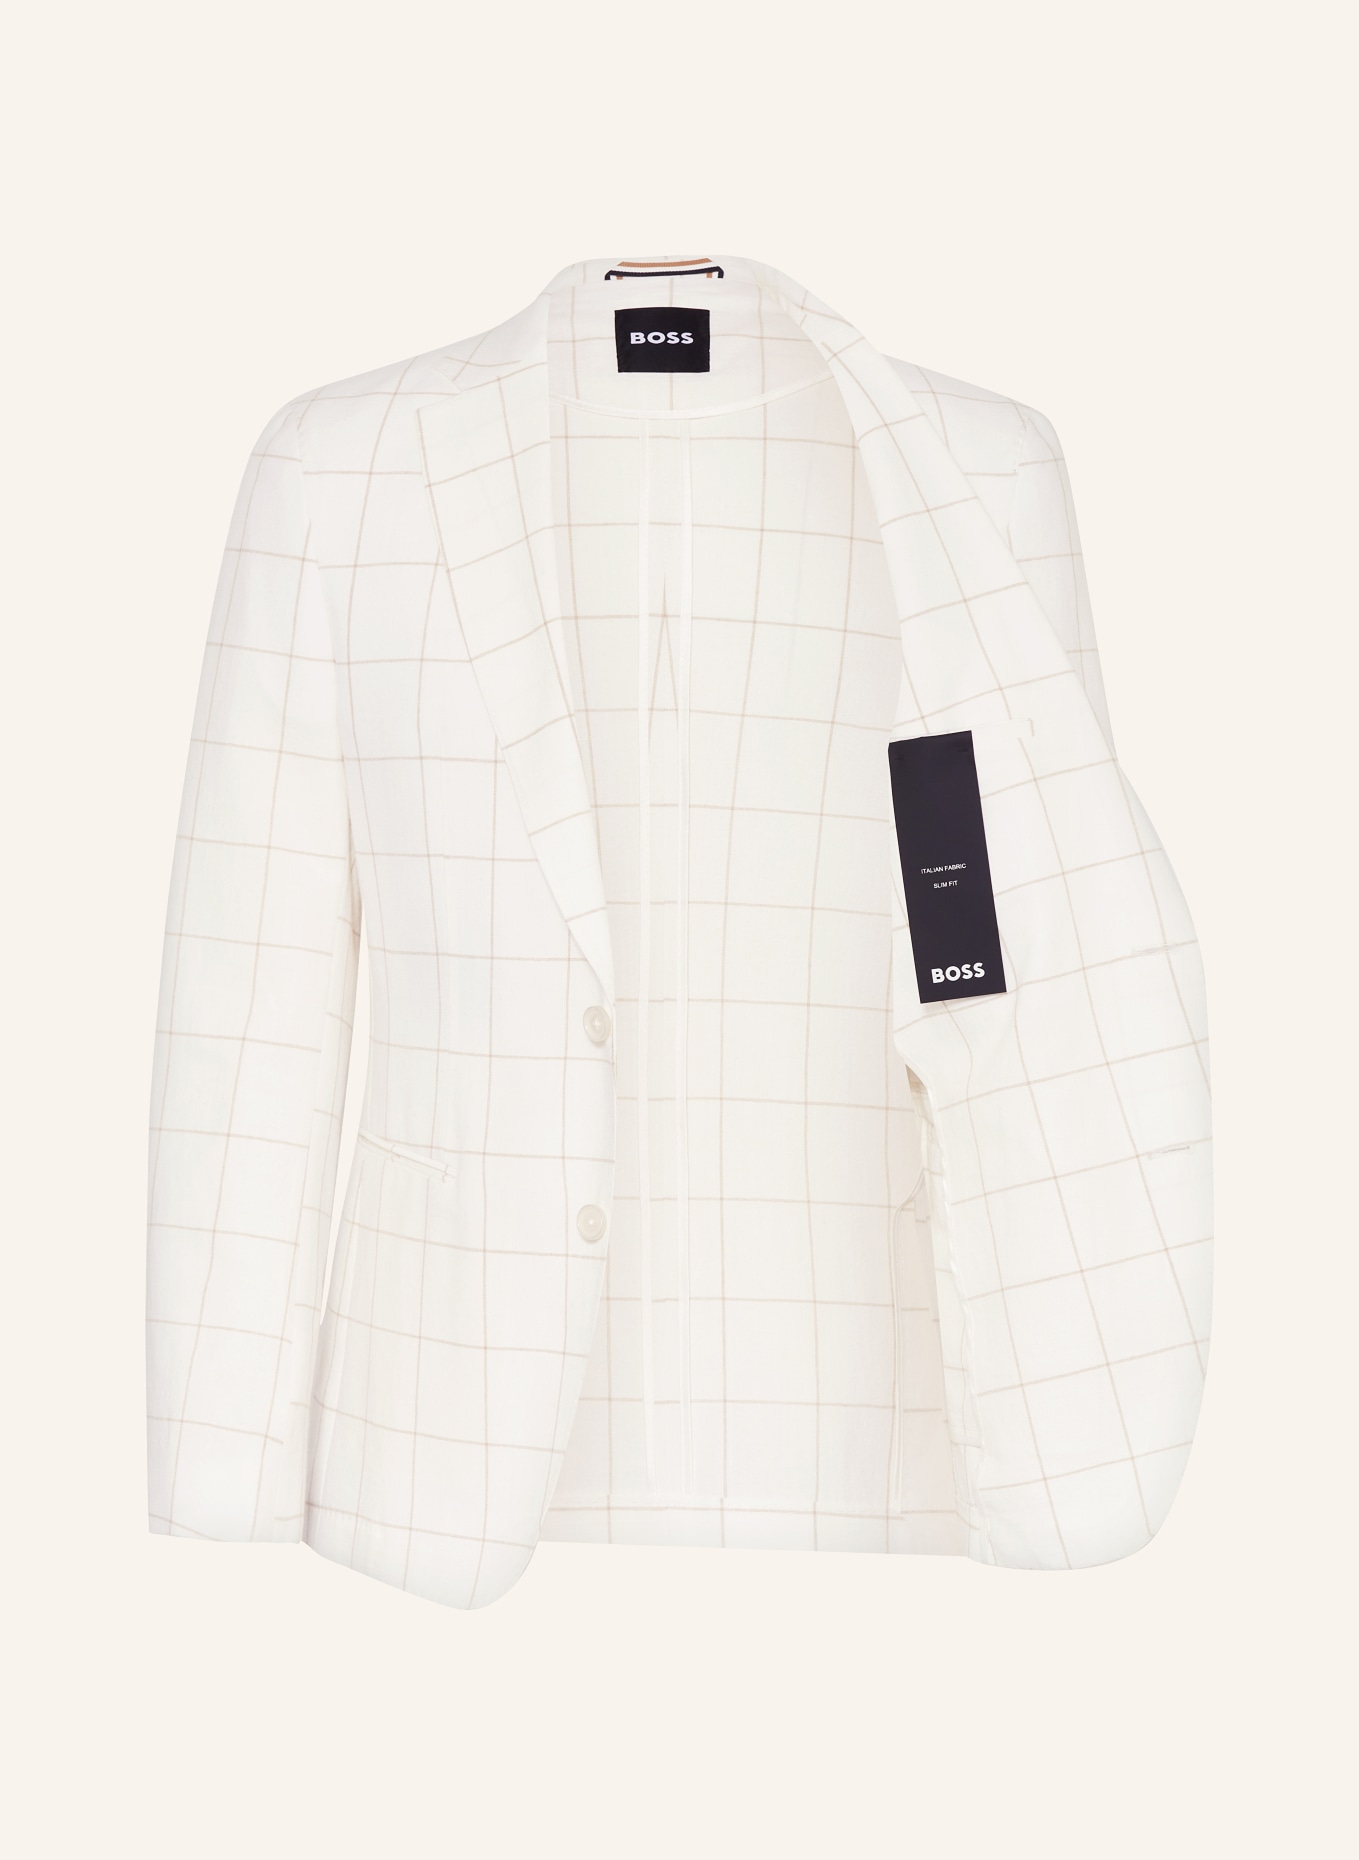 BOSS Anzugsakko HUGE Slim Fit, Farbe: 100 WHITE (Bild 4)